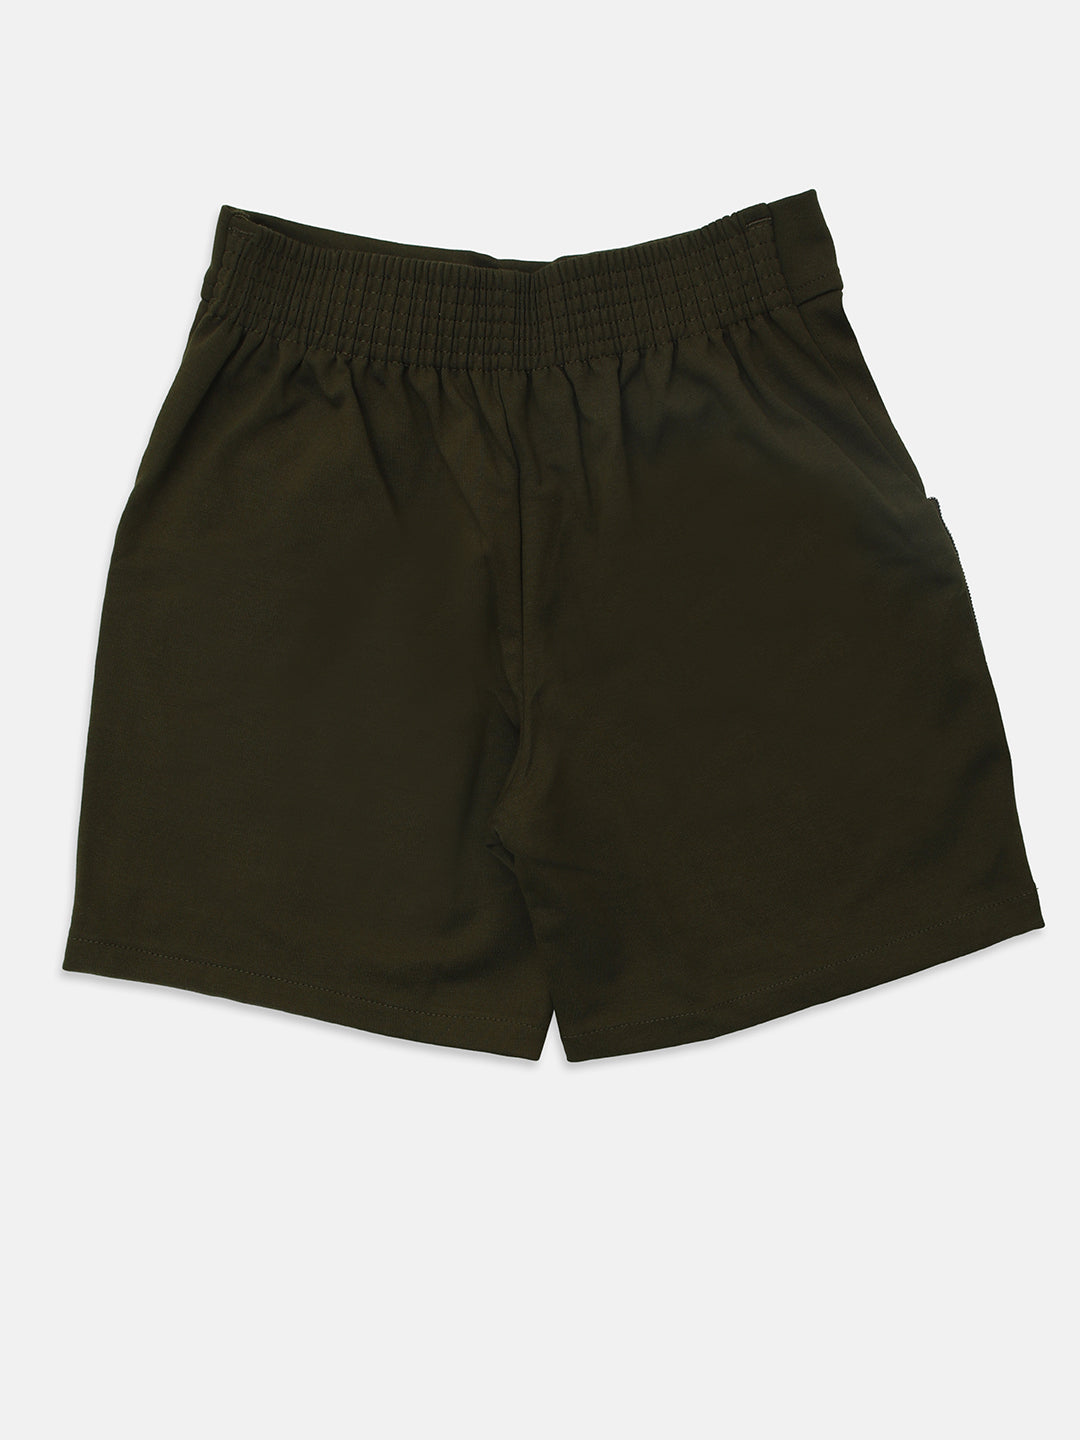 Ziama Girls Stylish Solid Shorts- Olive